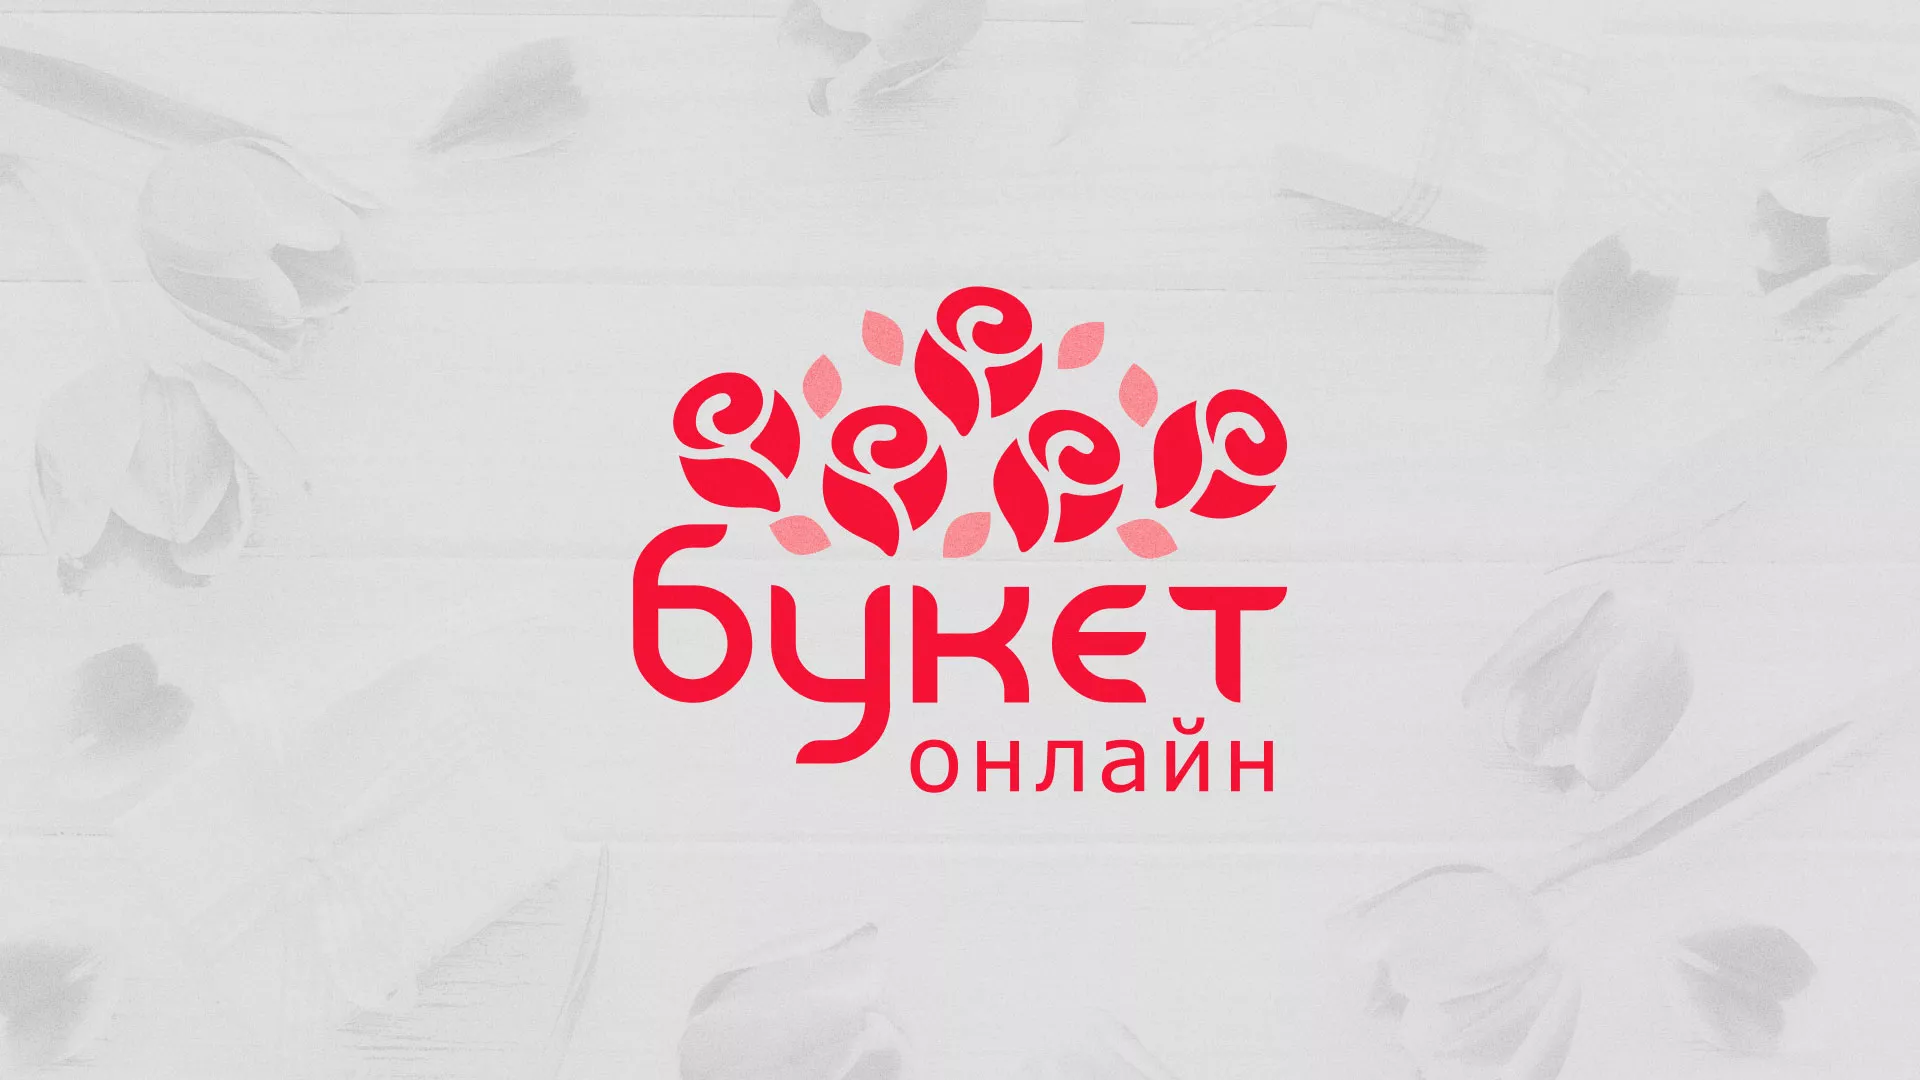 Создание интернет-магазина «Букет-онлайн» по цветам в Одинцово